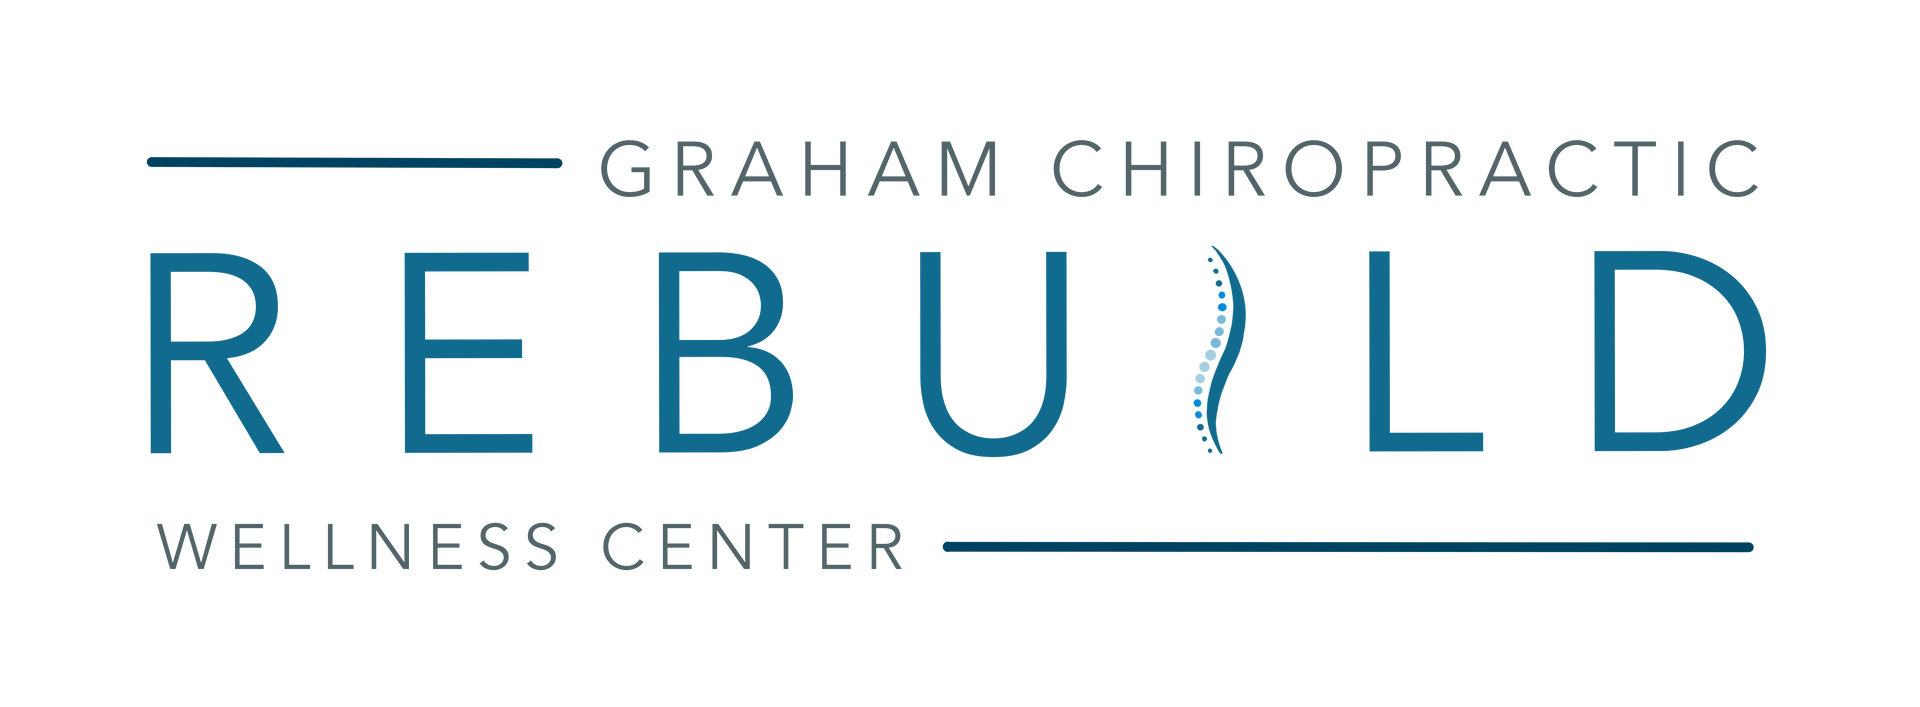 Rebuild Chiropractic Group LLC logo